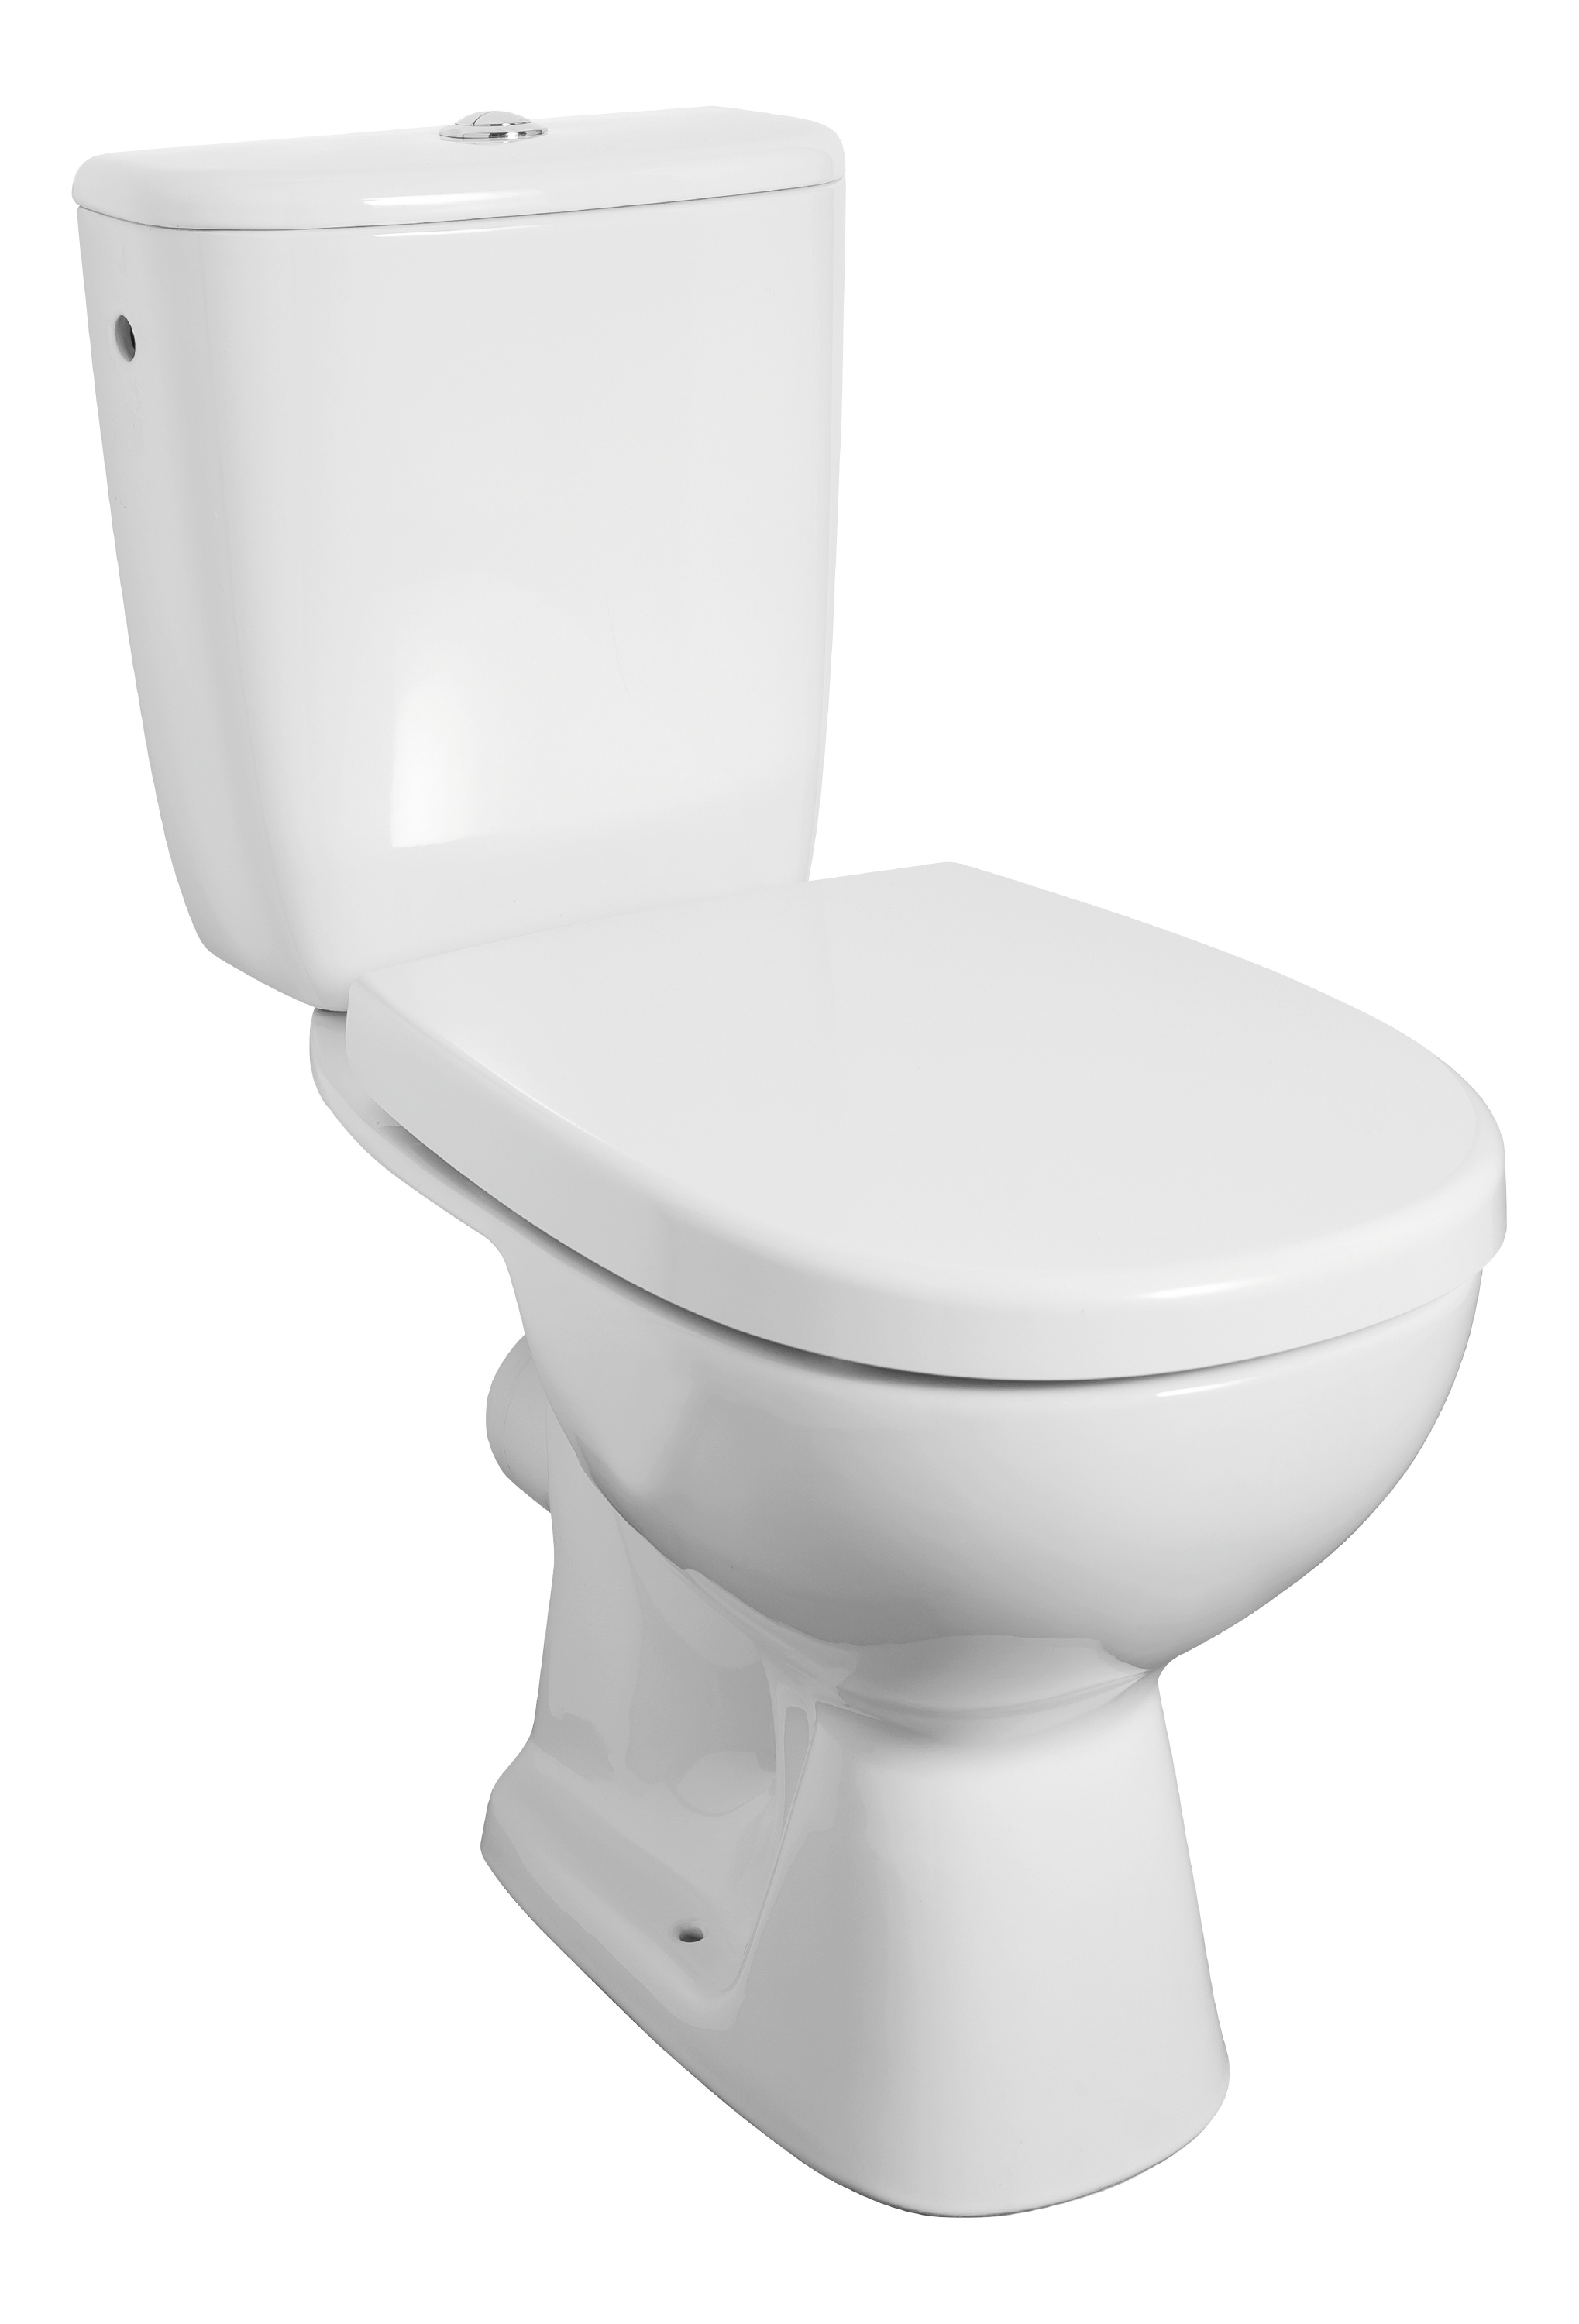 'aquaSu® WC-Kombination Rivera in Weiß, Stand-WC mit WC-Sitz und Spülkasten, Abgang waagerecht